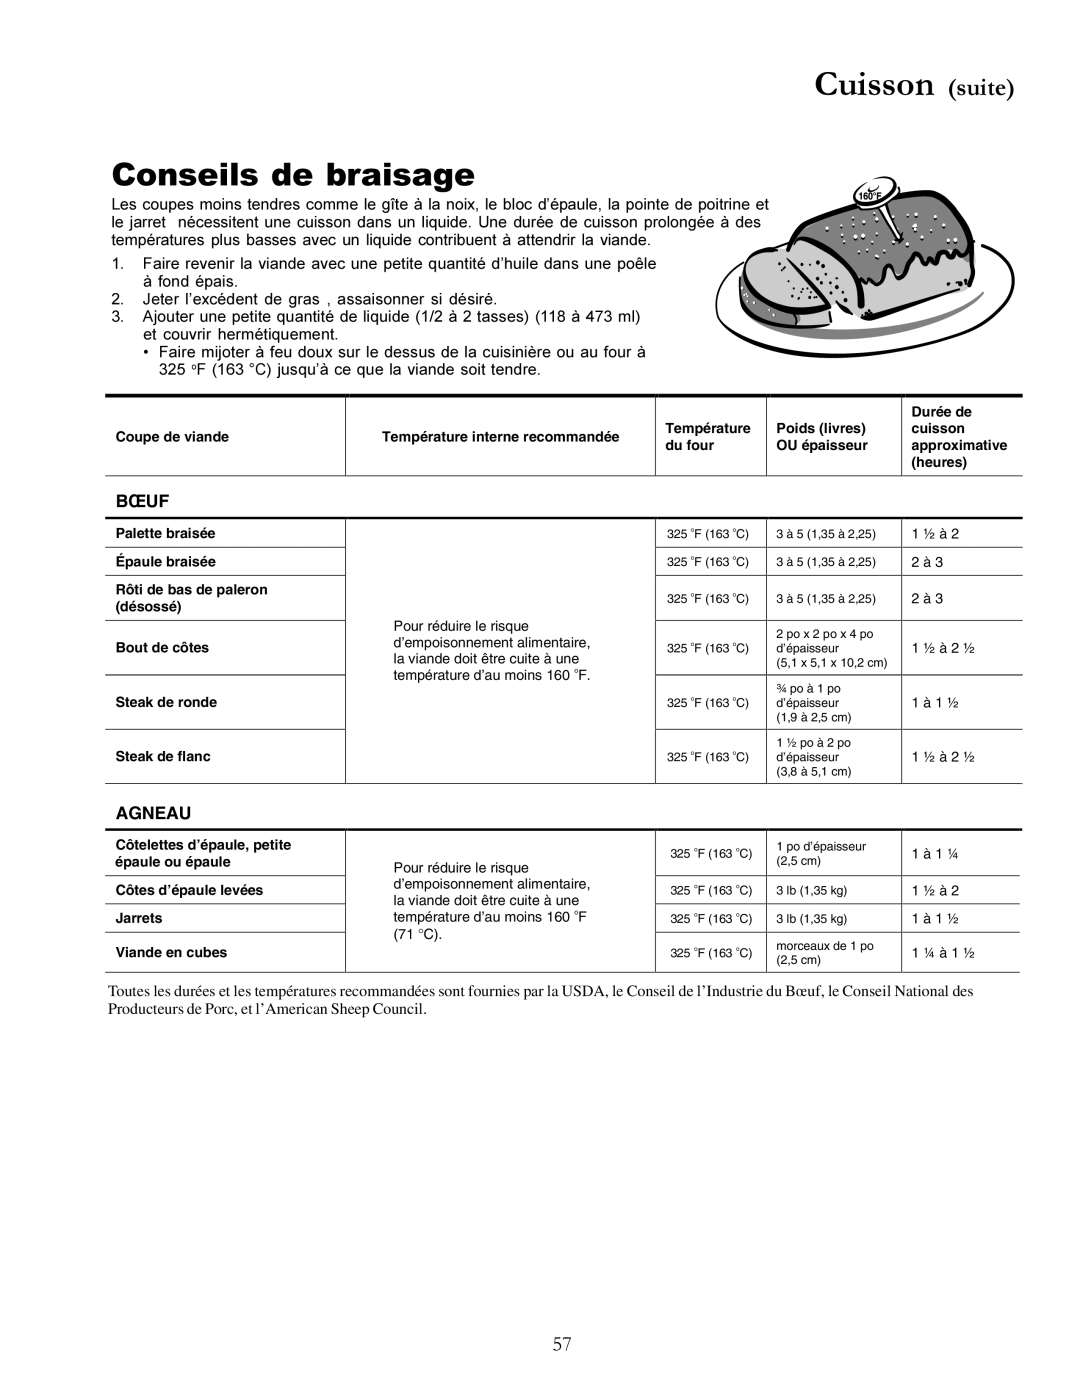 Amana ACF3355A, The Big Oven Gas Range owner manual Conseils de braisage, Cuisson suite, Bœuf, Agneau 